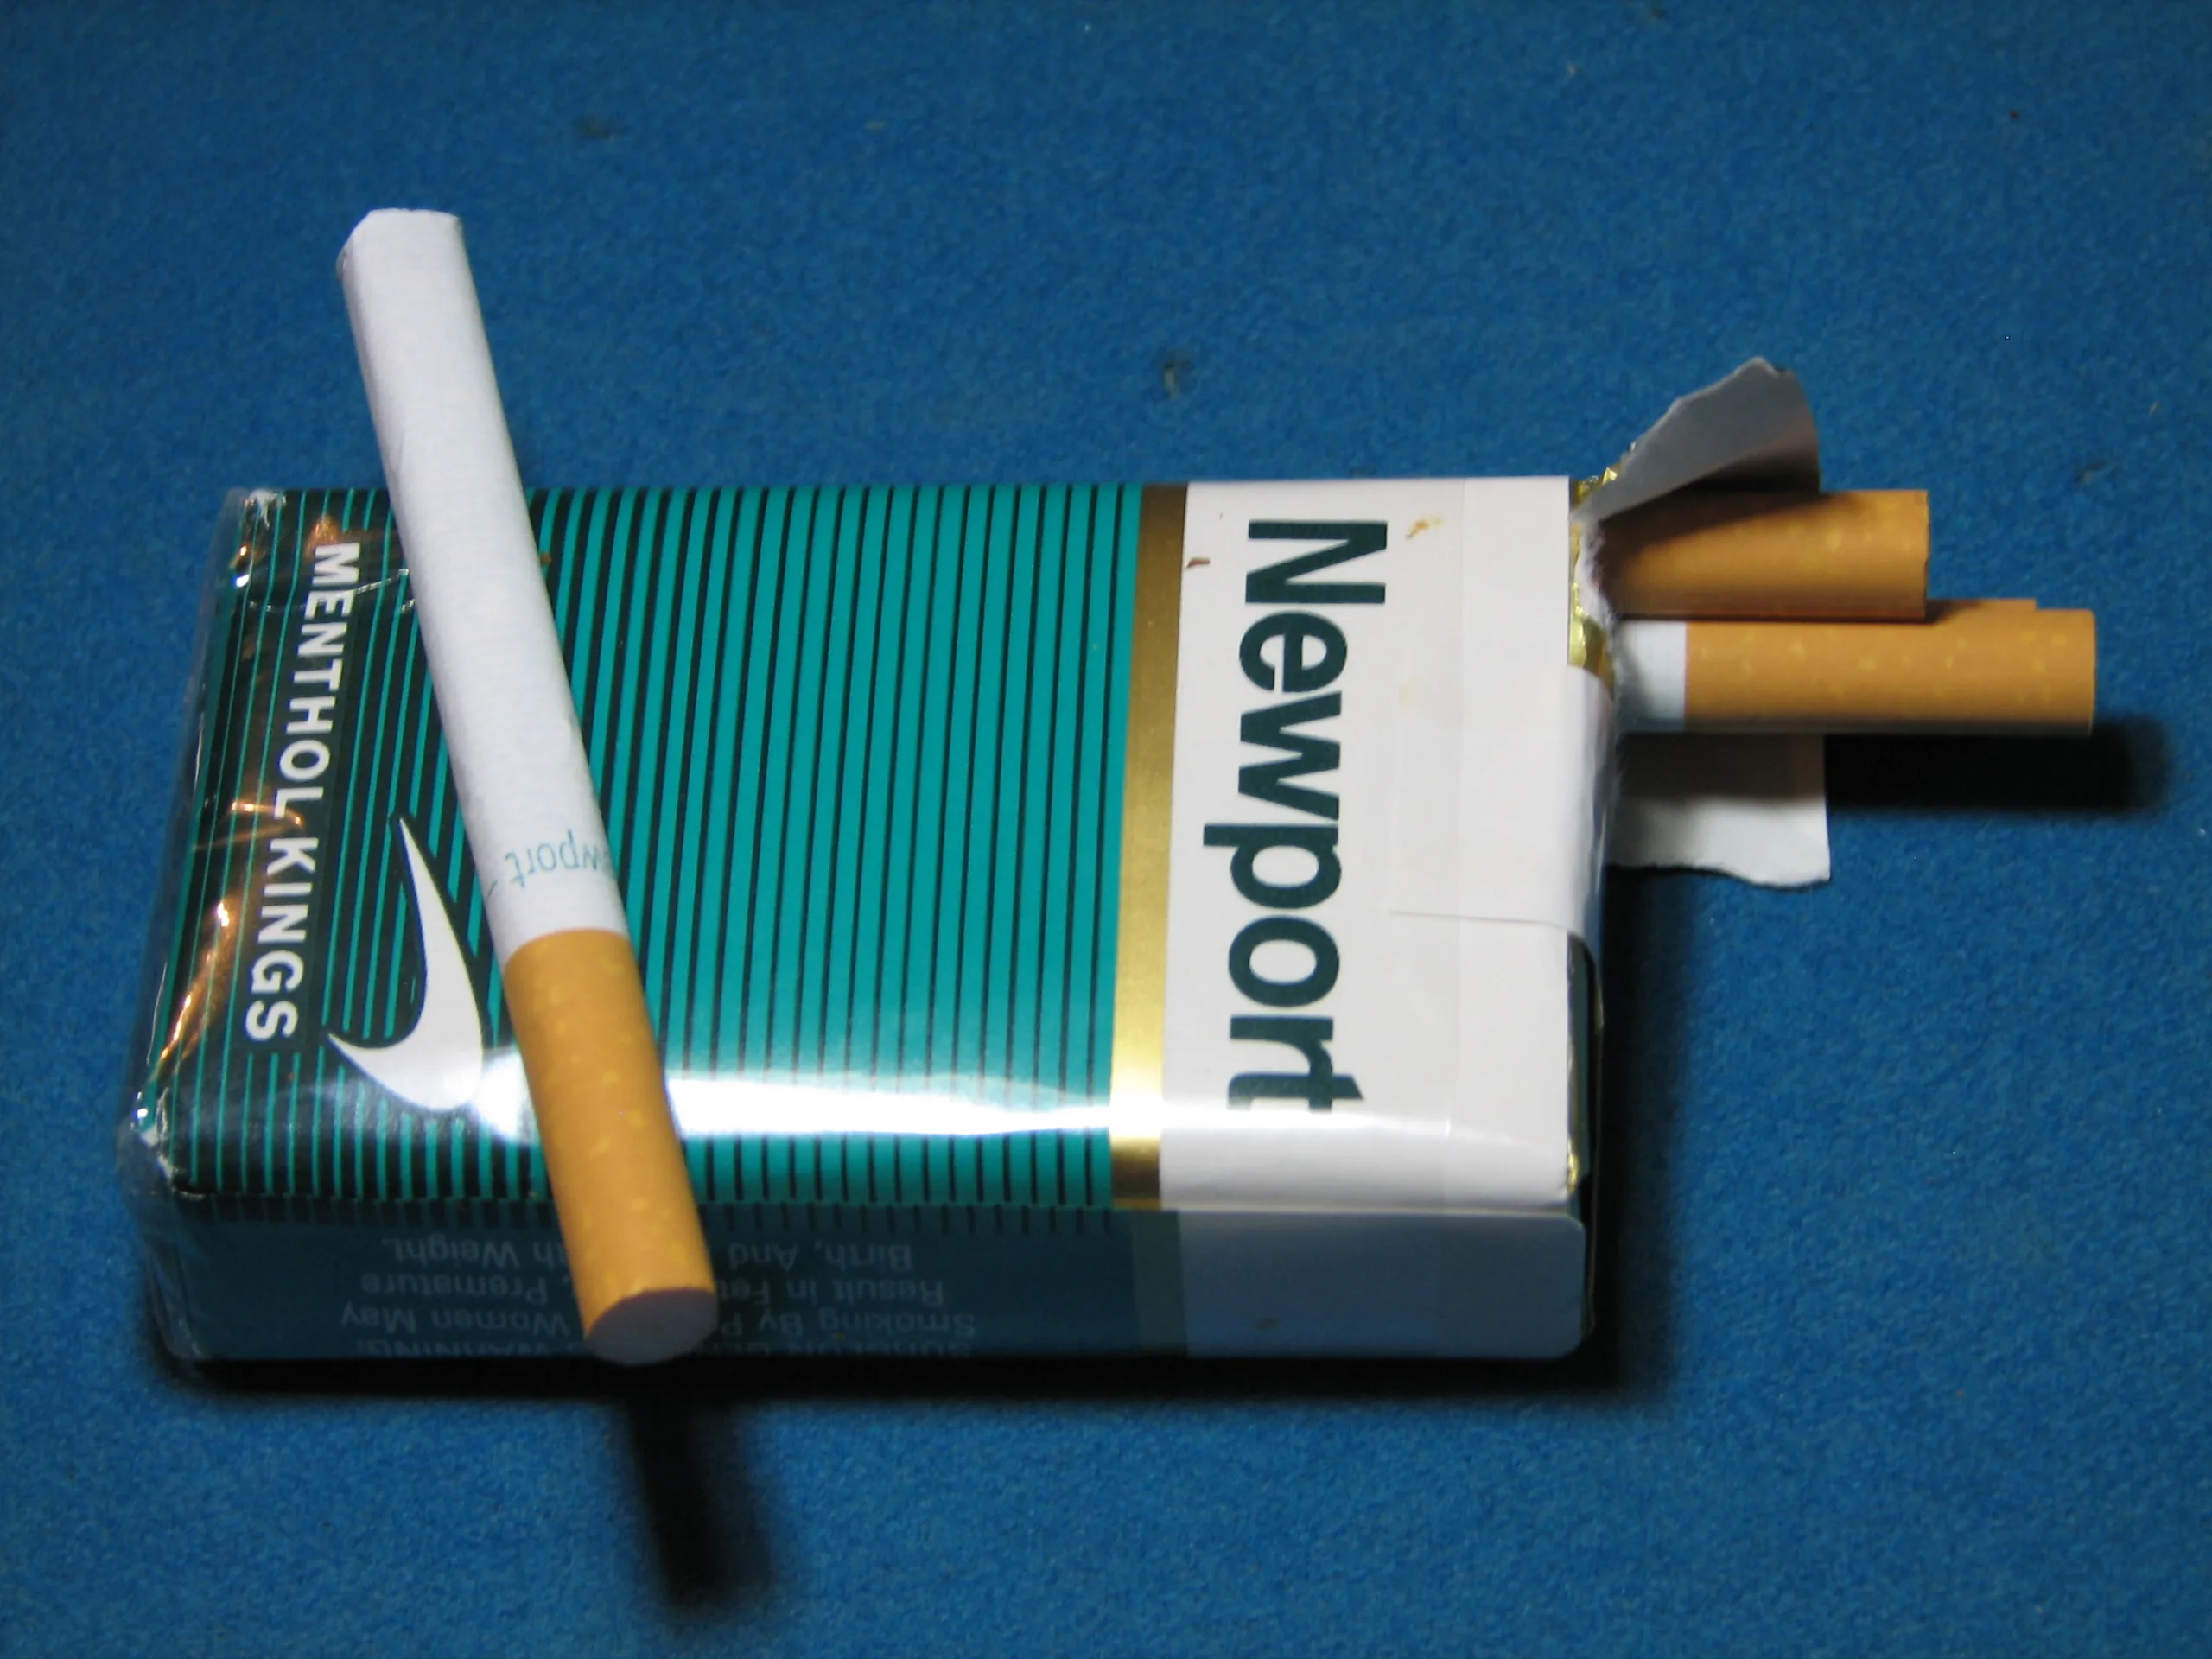 newport cigarette box